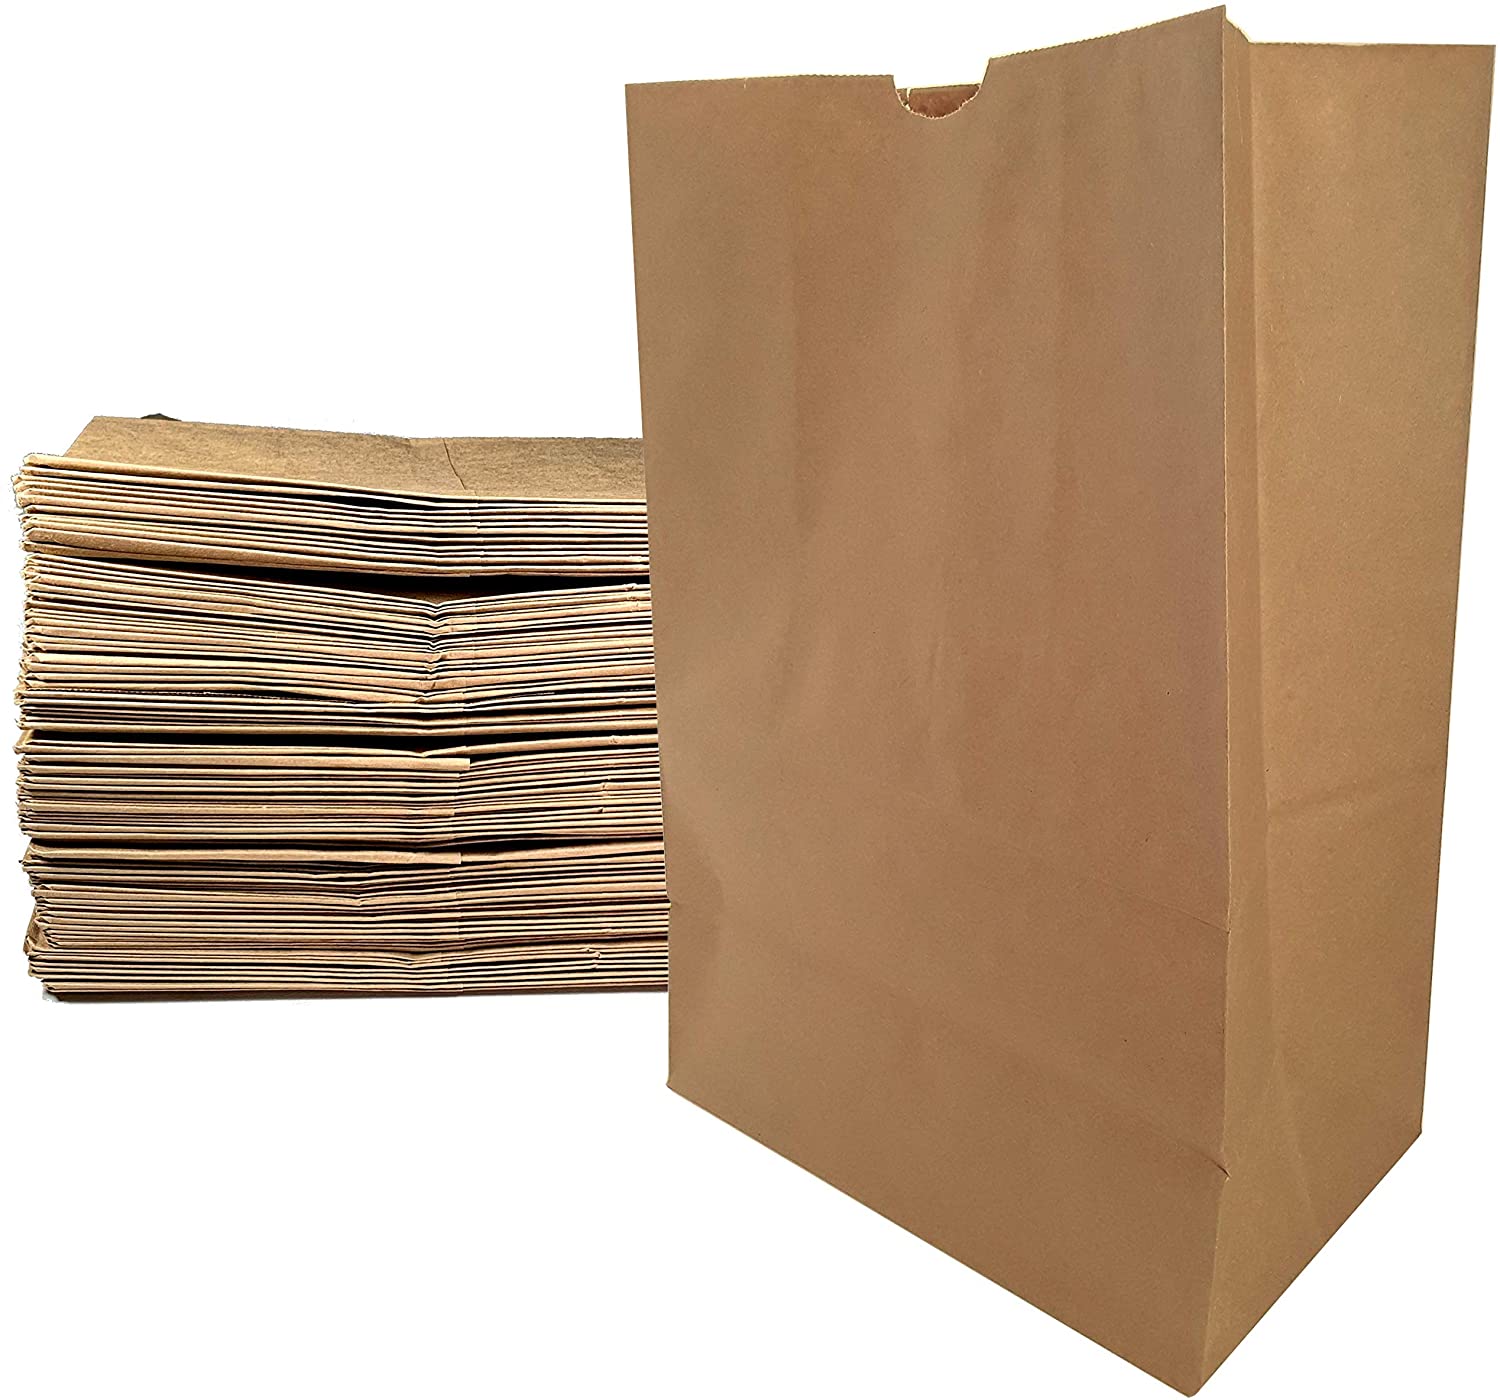 No autorizado Preguntarse Instalar en pc Bolsas de papel grandes para viveres, 17"x12" x 50 unidades color marrón  Kraft, bolsa resistente, peso 57 libras. - DISTRIBUIDORA JH